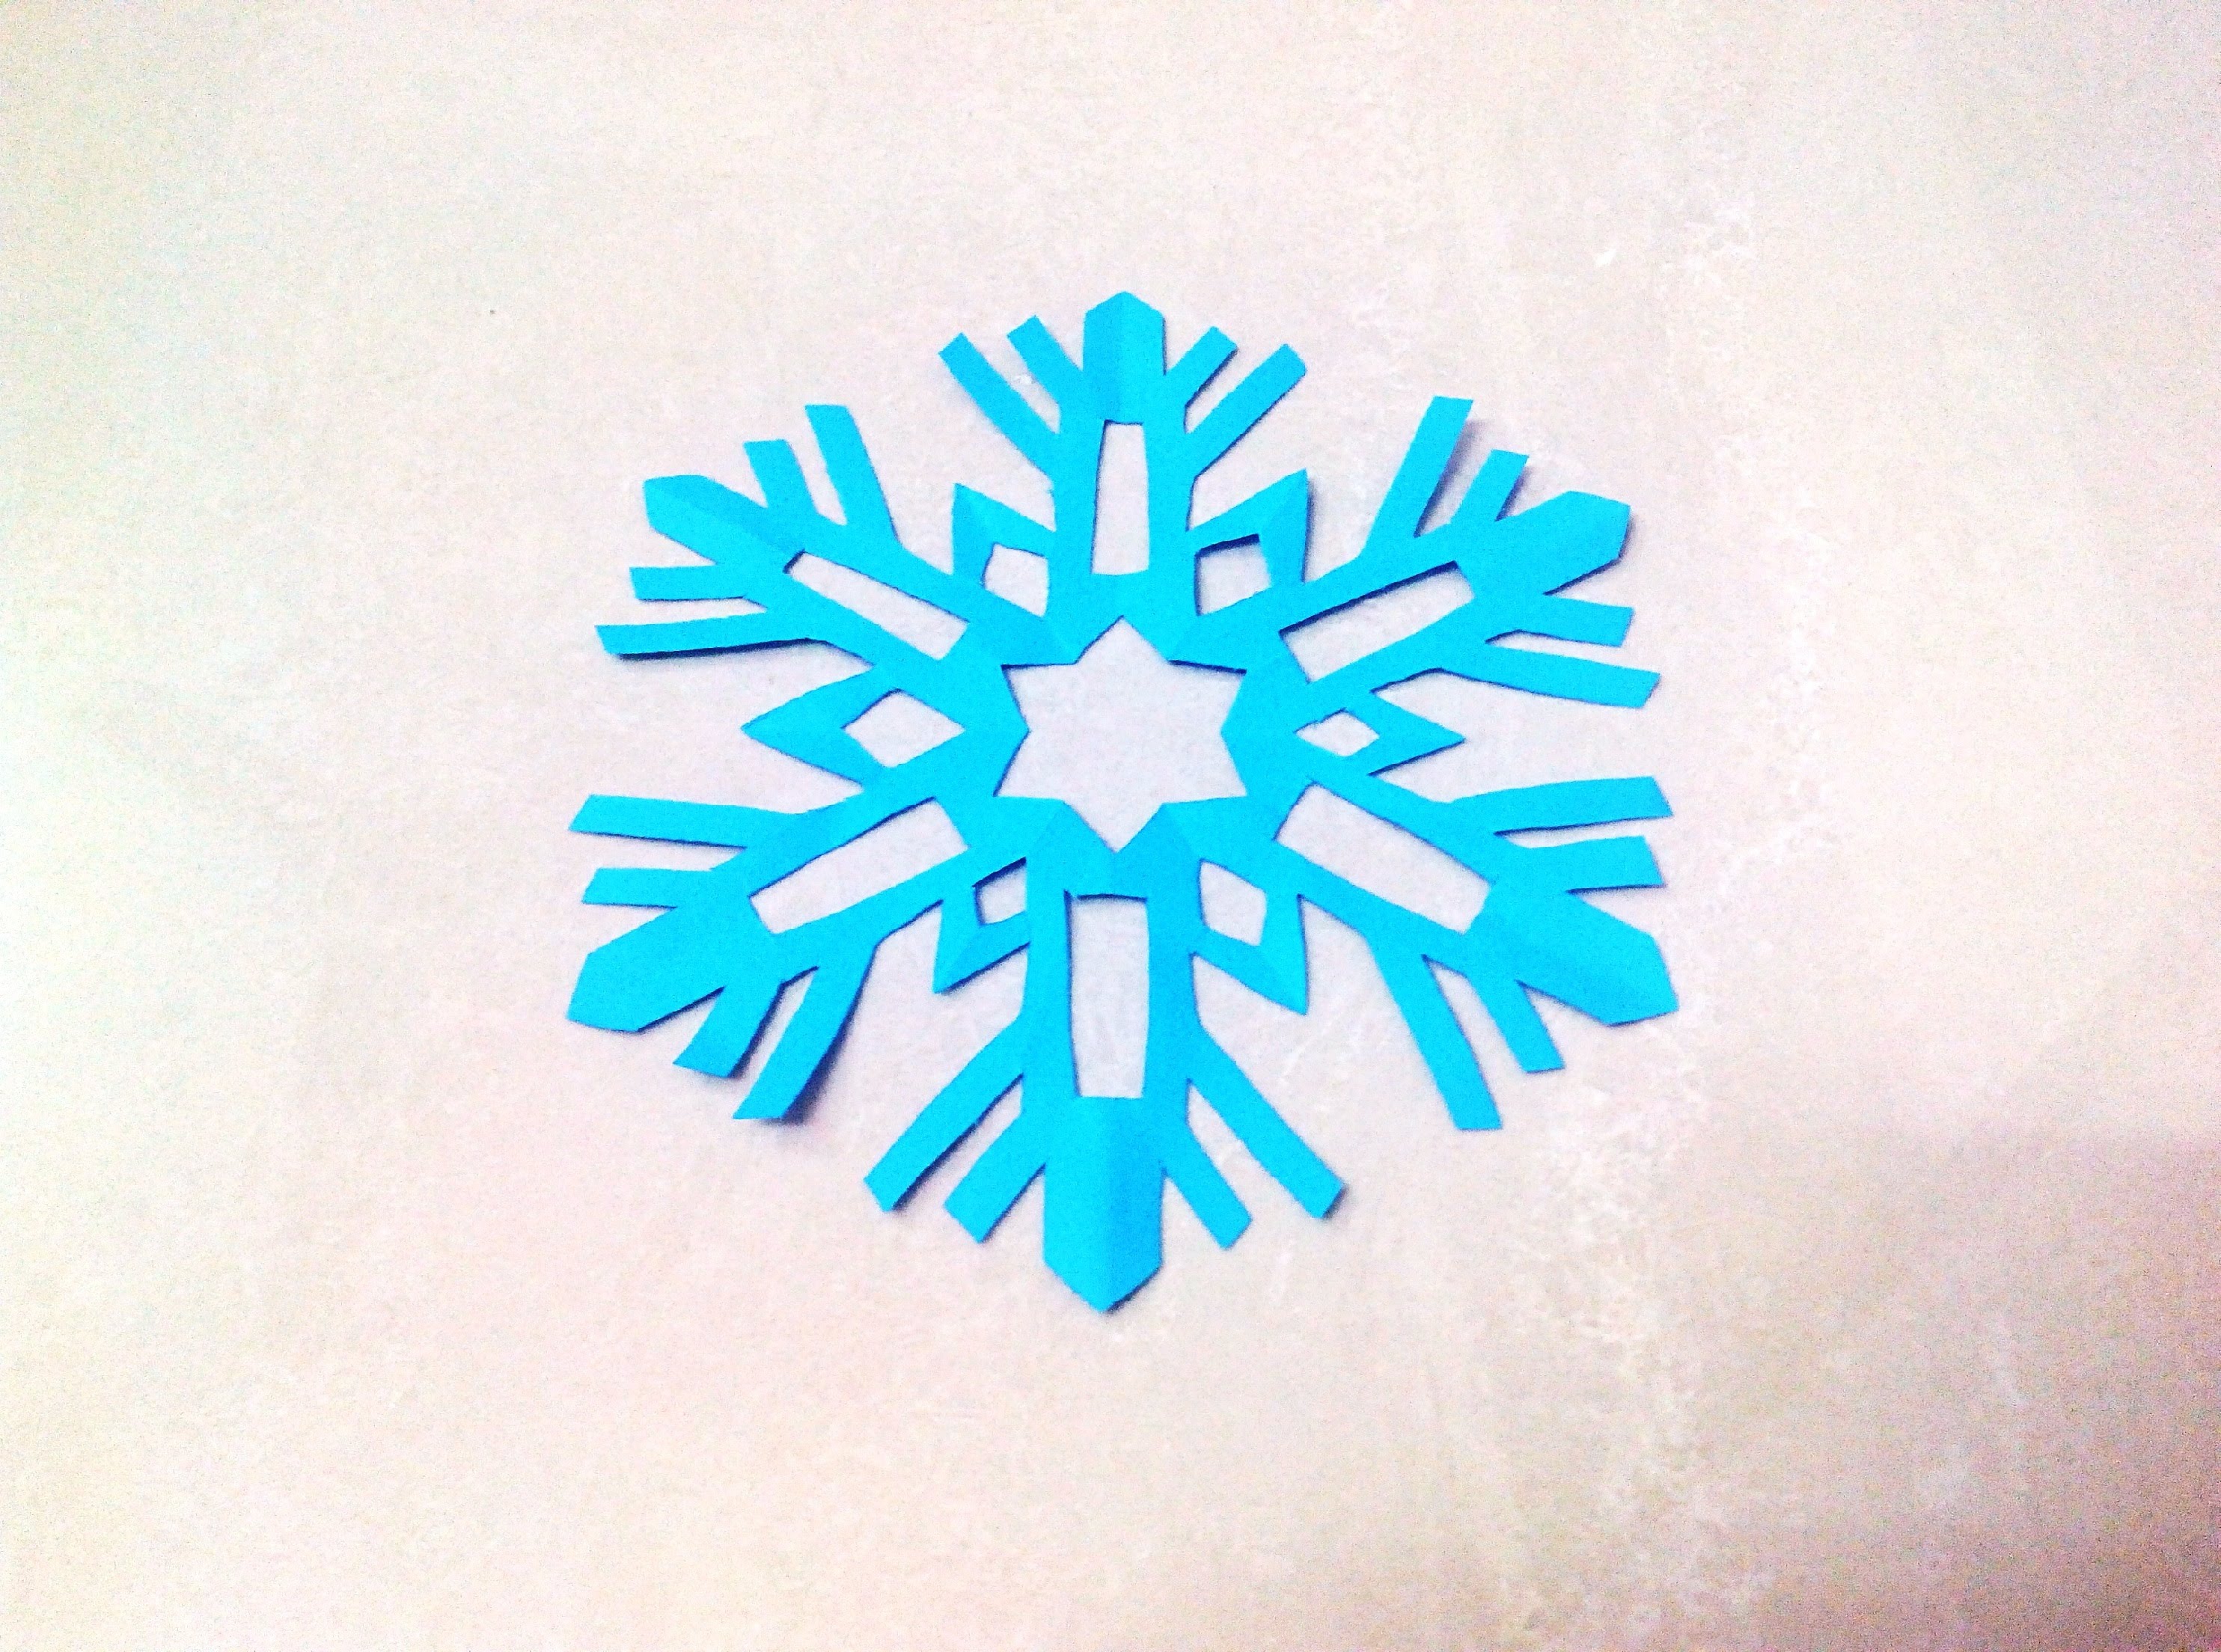 How to make a kirigami paper snowflake - 2 | Kirigami / Paper ...